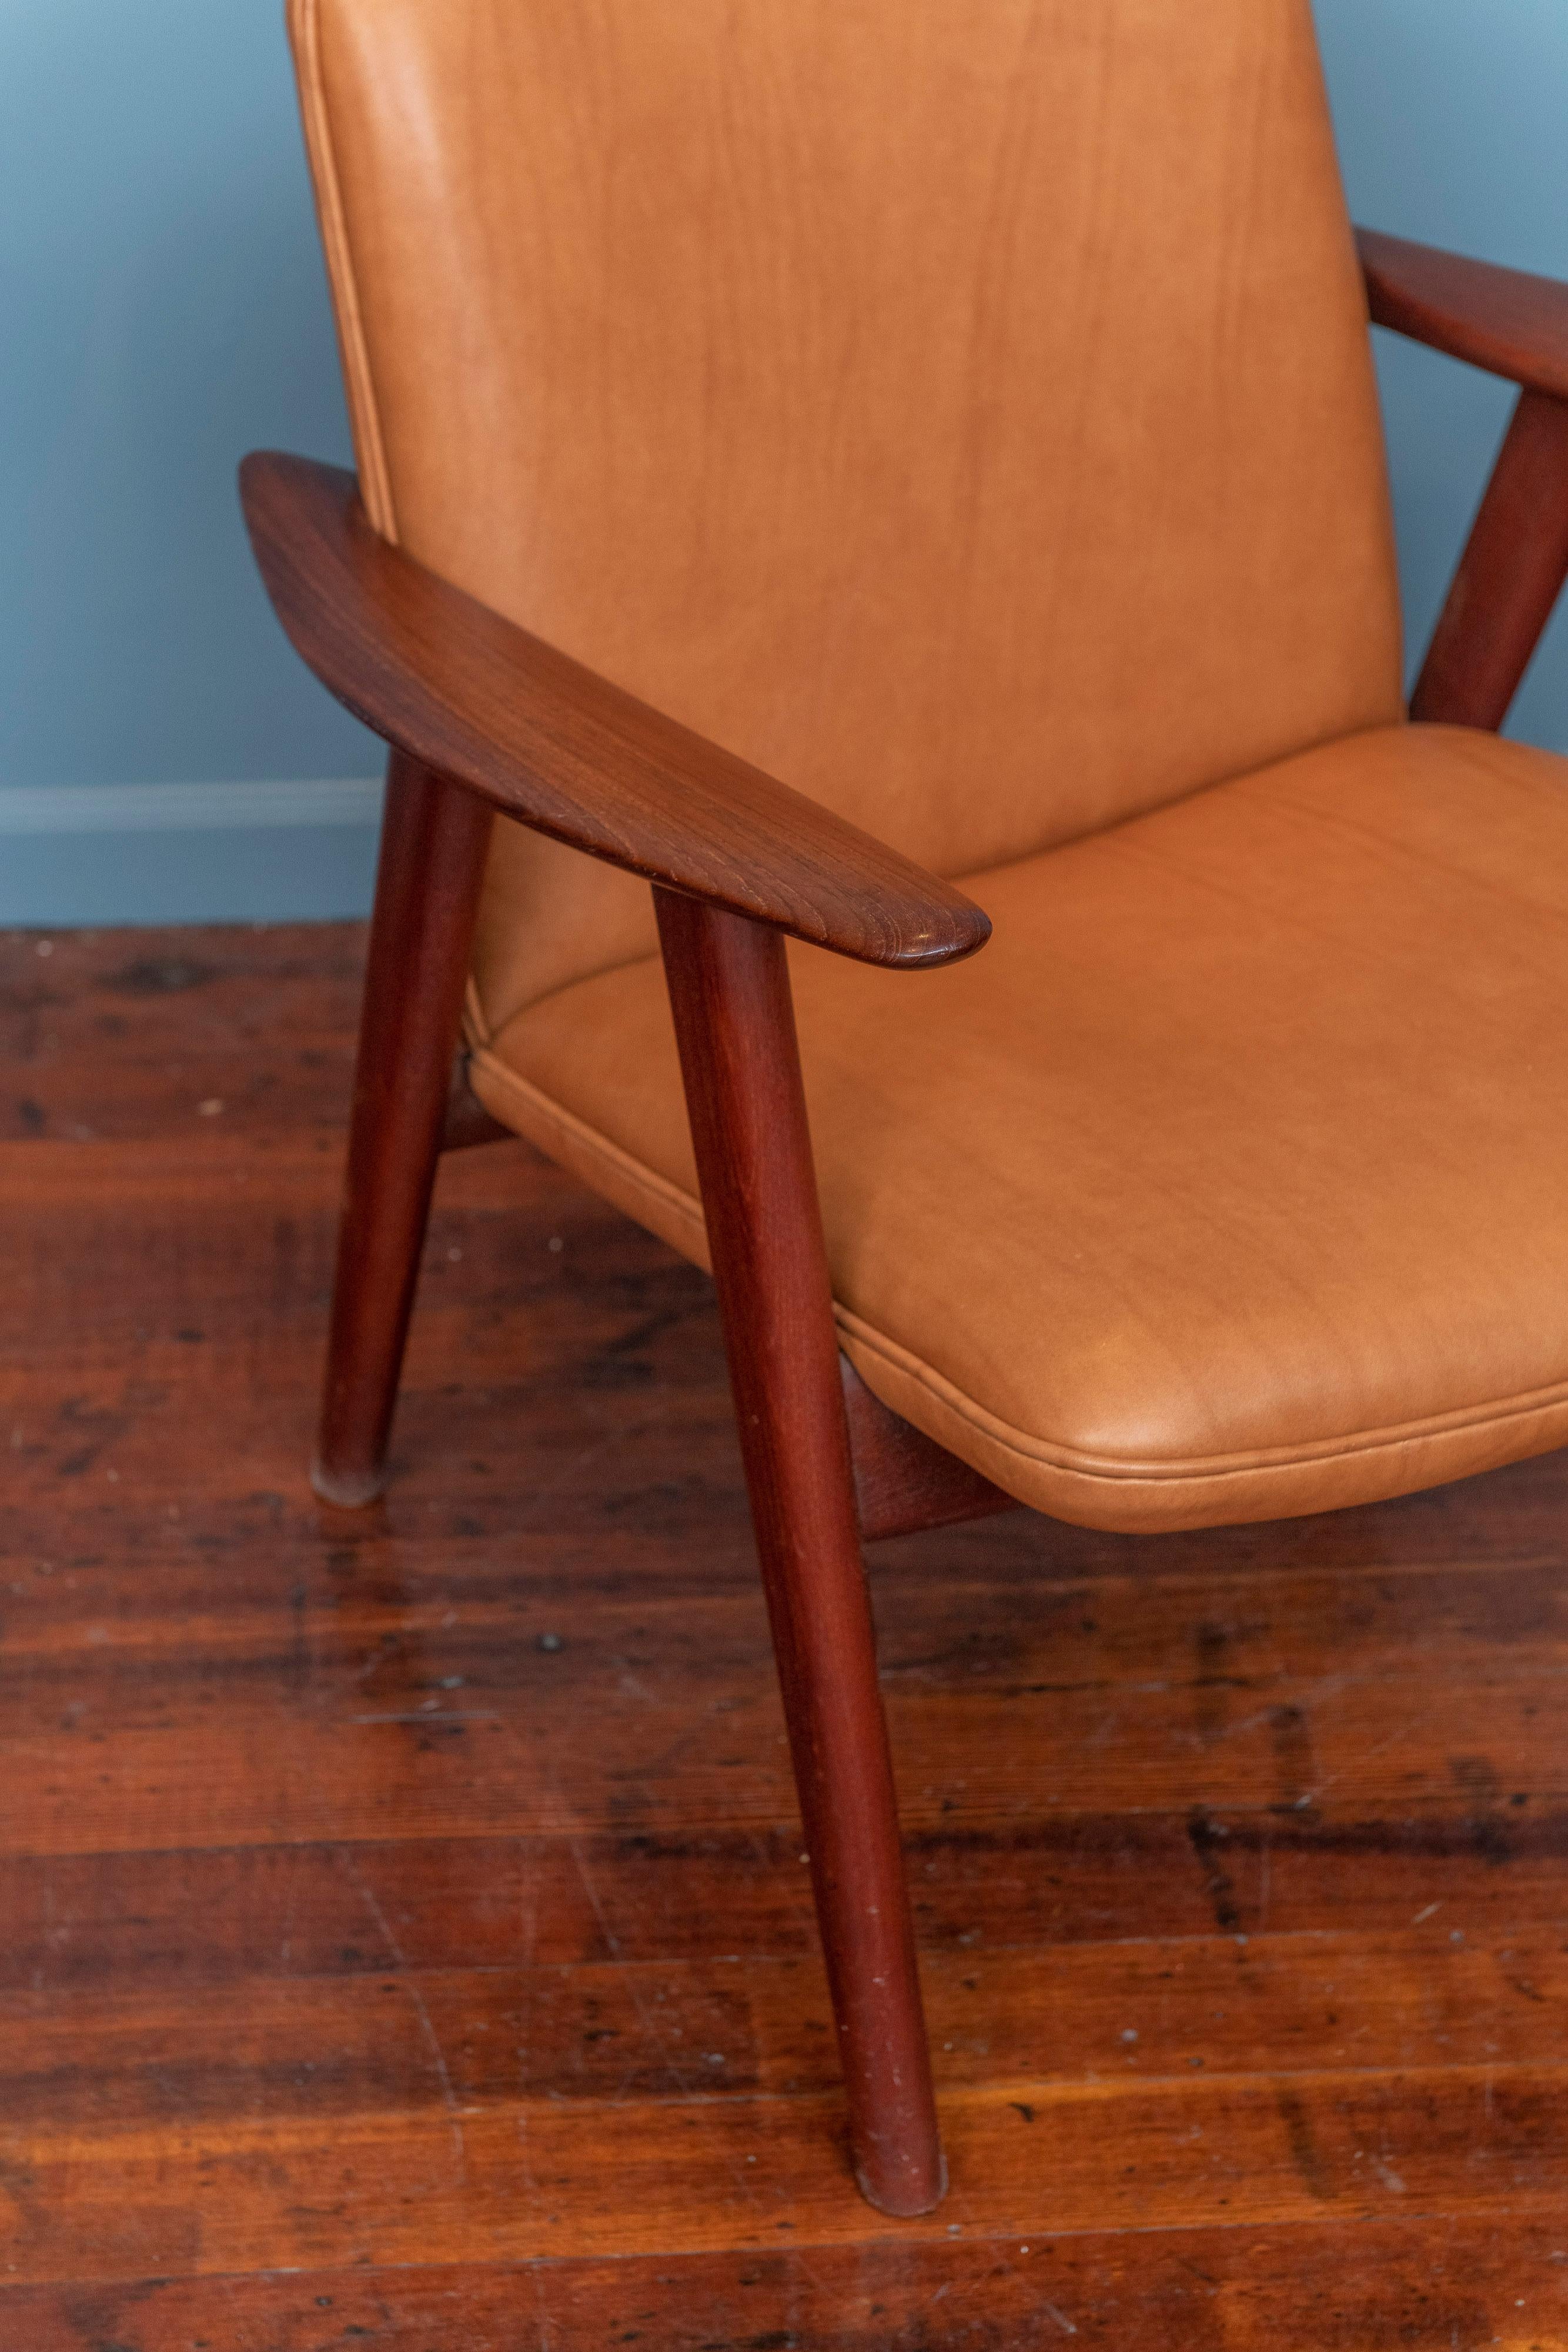 Chaise longue Hans J. Wegner, modèle JH517 pour Johannes Hansen. Rare modèle de chaise du maître en teck huilé d'origine et nouvellement recouverte d'un cuir cognac, estampillé. Prêt à être installé et apprécié.